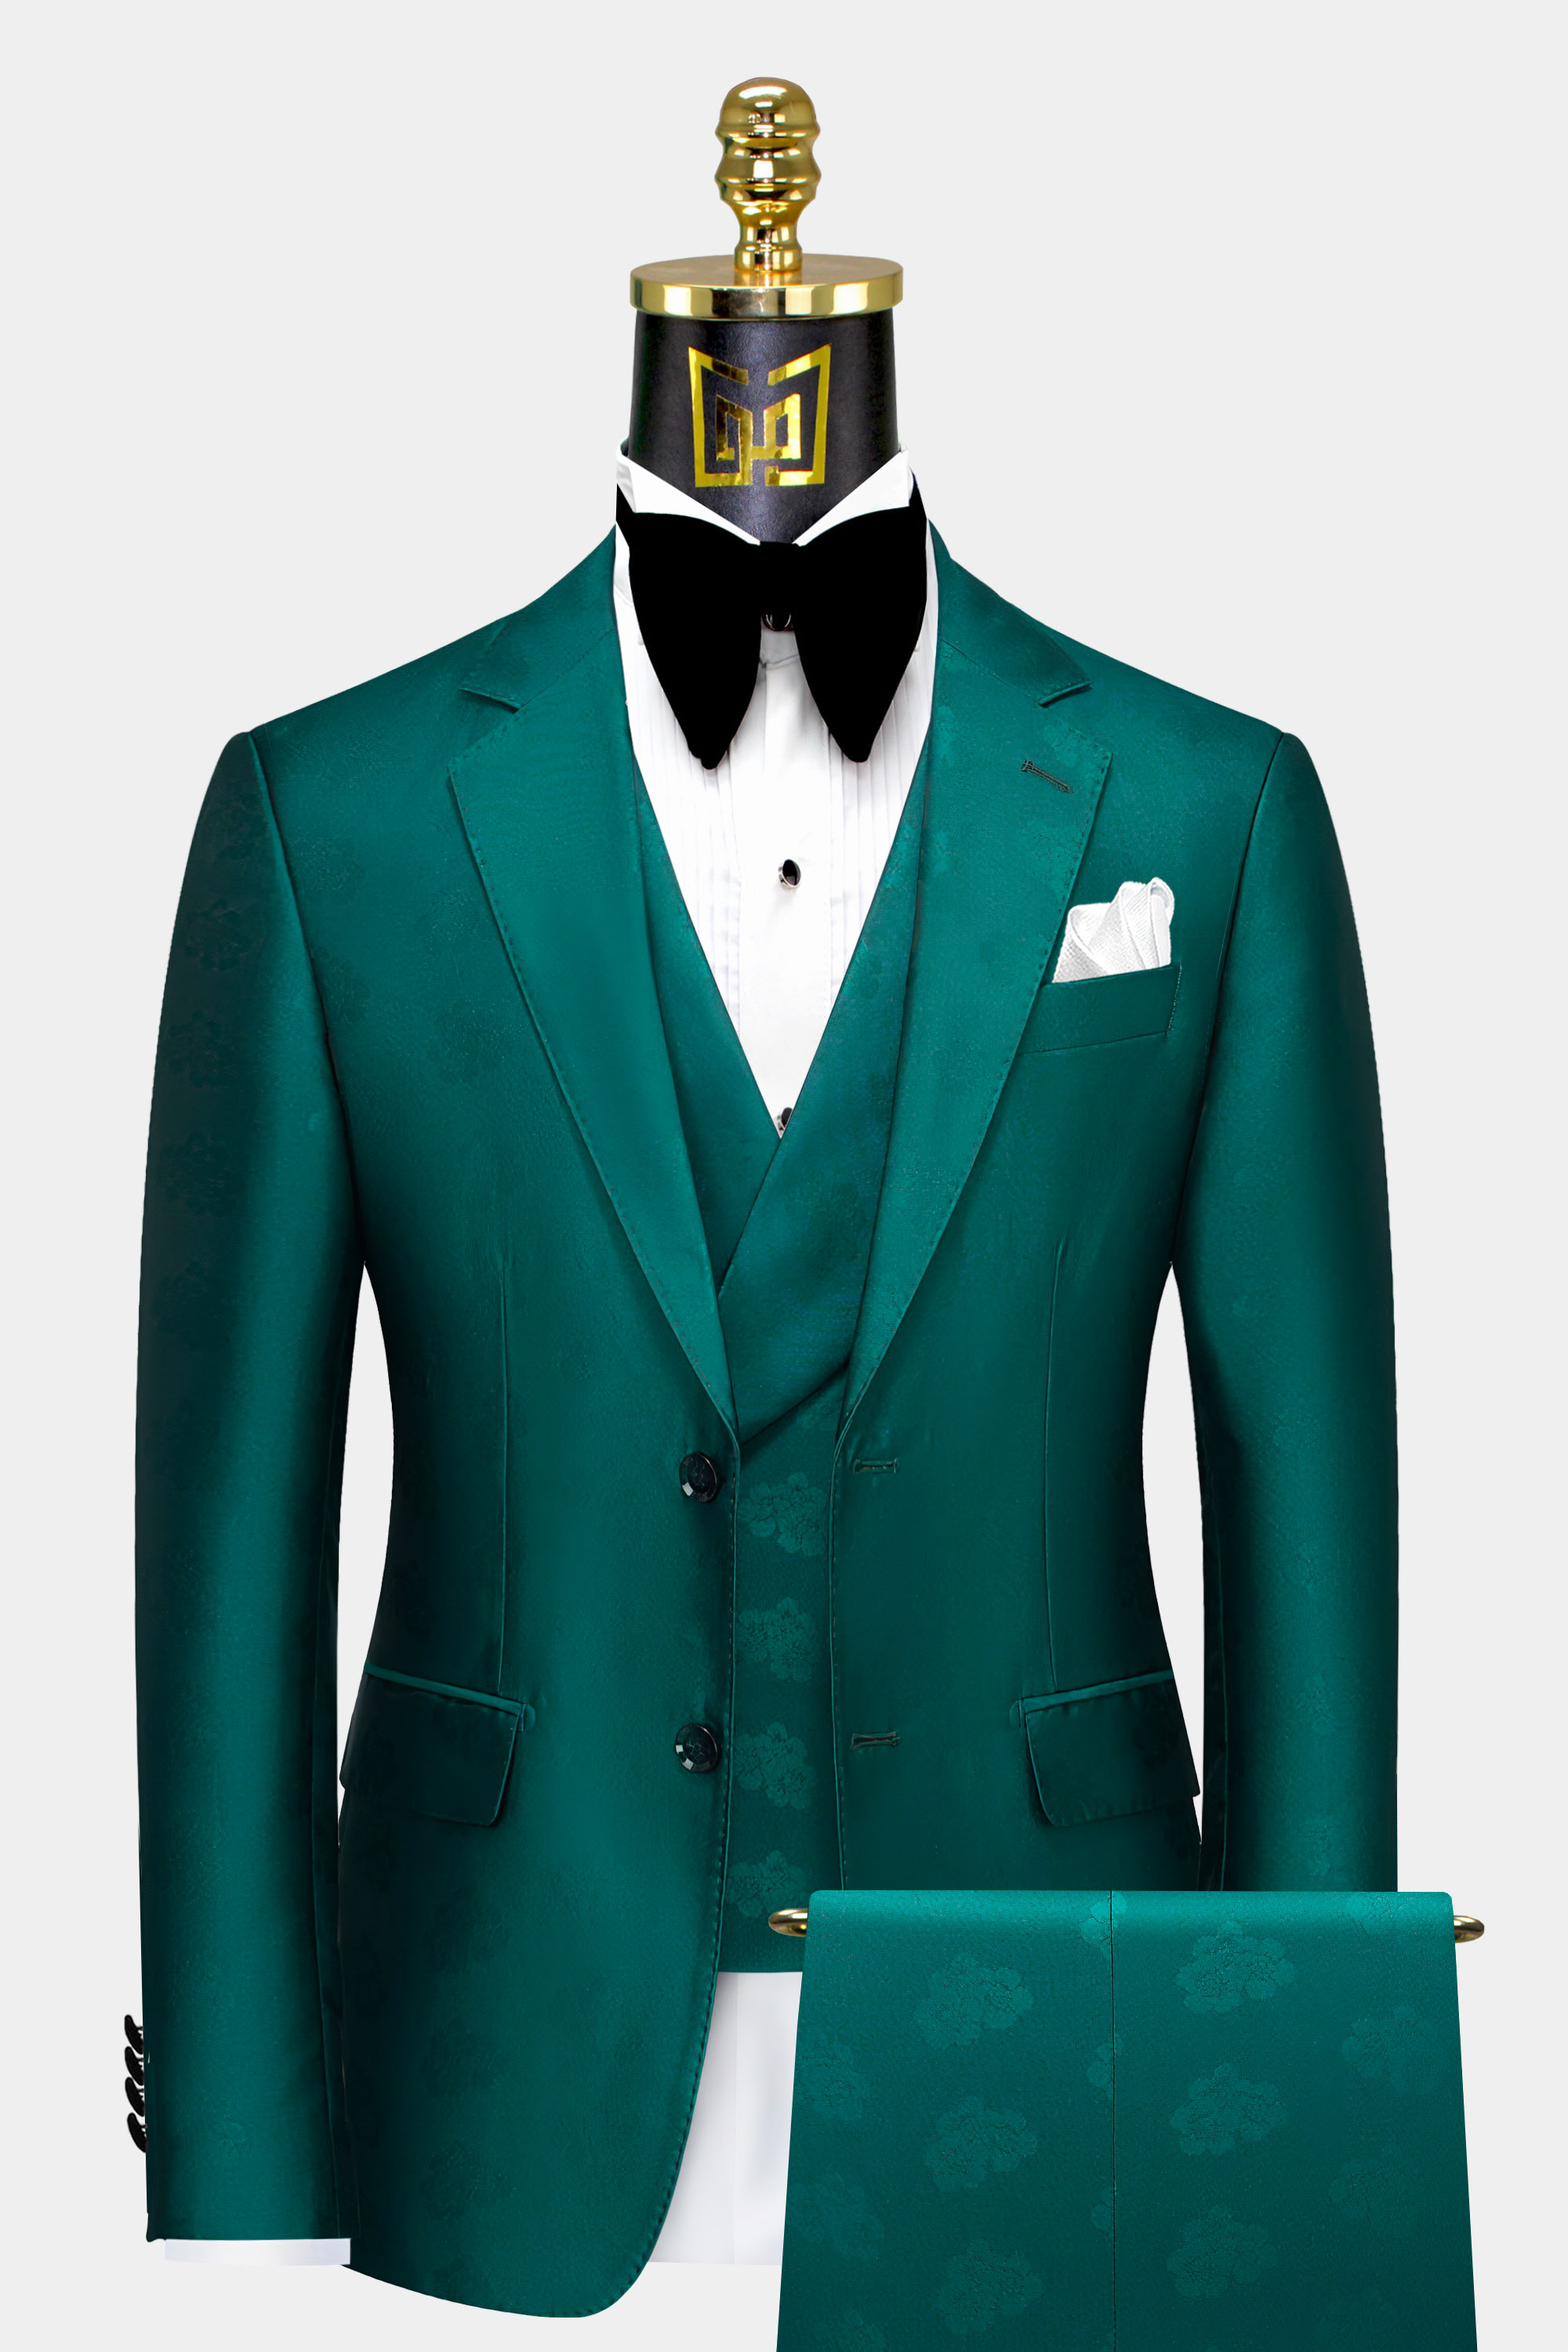 Mens-Teal-Green-Suit-Wedding-Groom-Tuxedo-from-Gentlemansguru.com